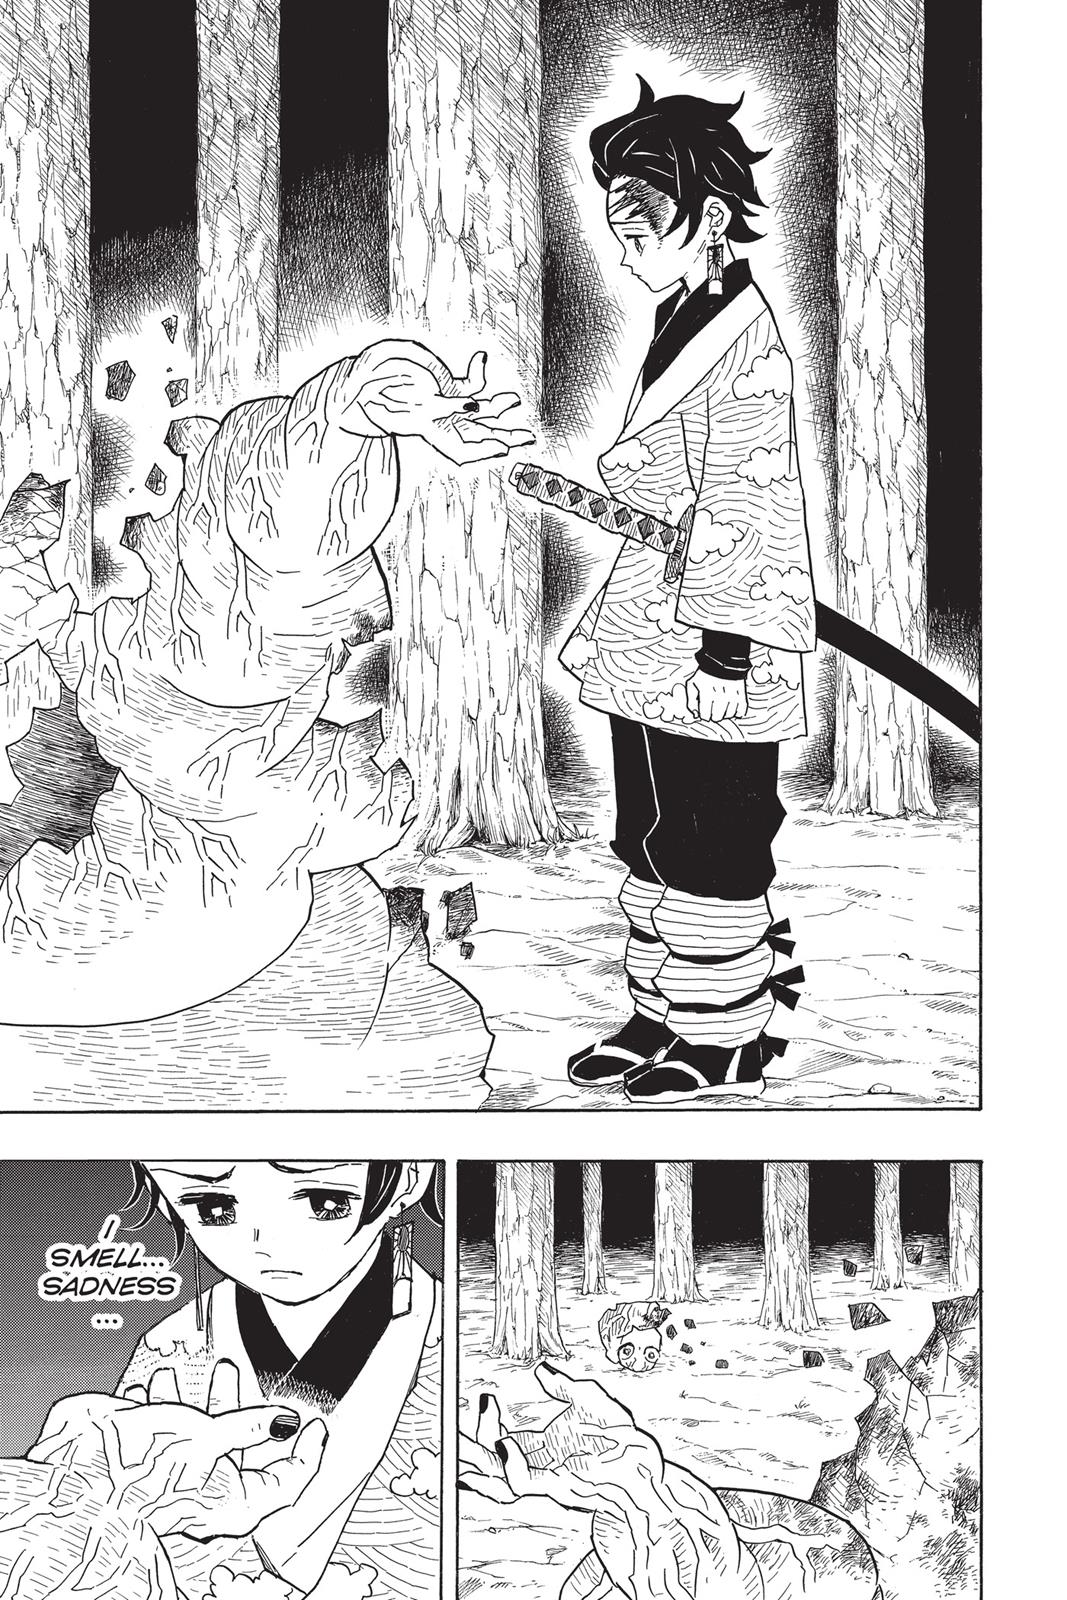 Demon Slayer Manga Manga Chapter - 8 - image 9